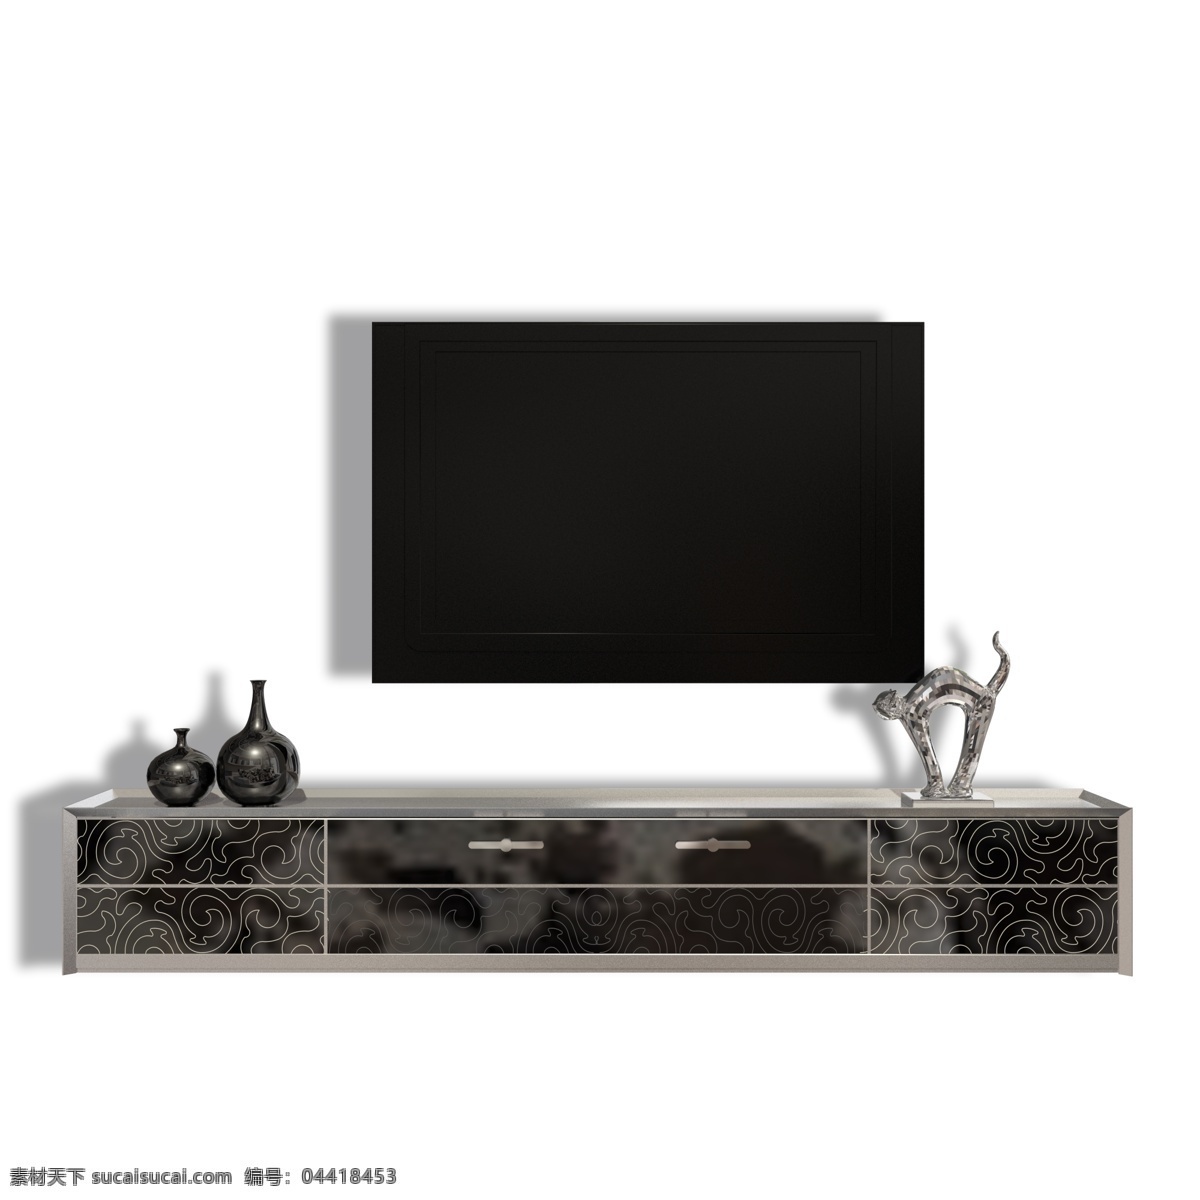 现代 金属 电视 柜体 组合 电视柜体组合 柜体组合 实木电视柜 欧式电视柜 摆件 摆台 装饰 黑色 玻璃